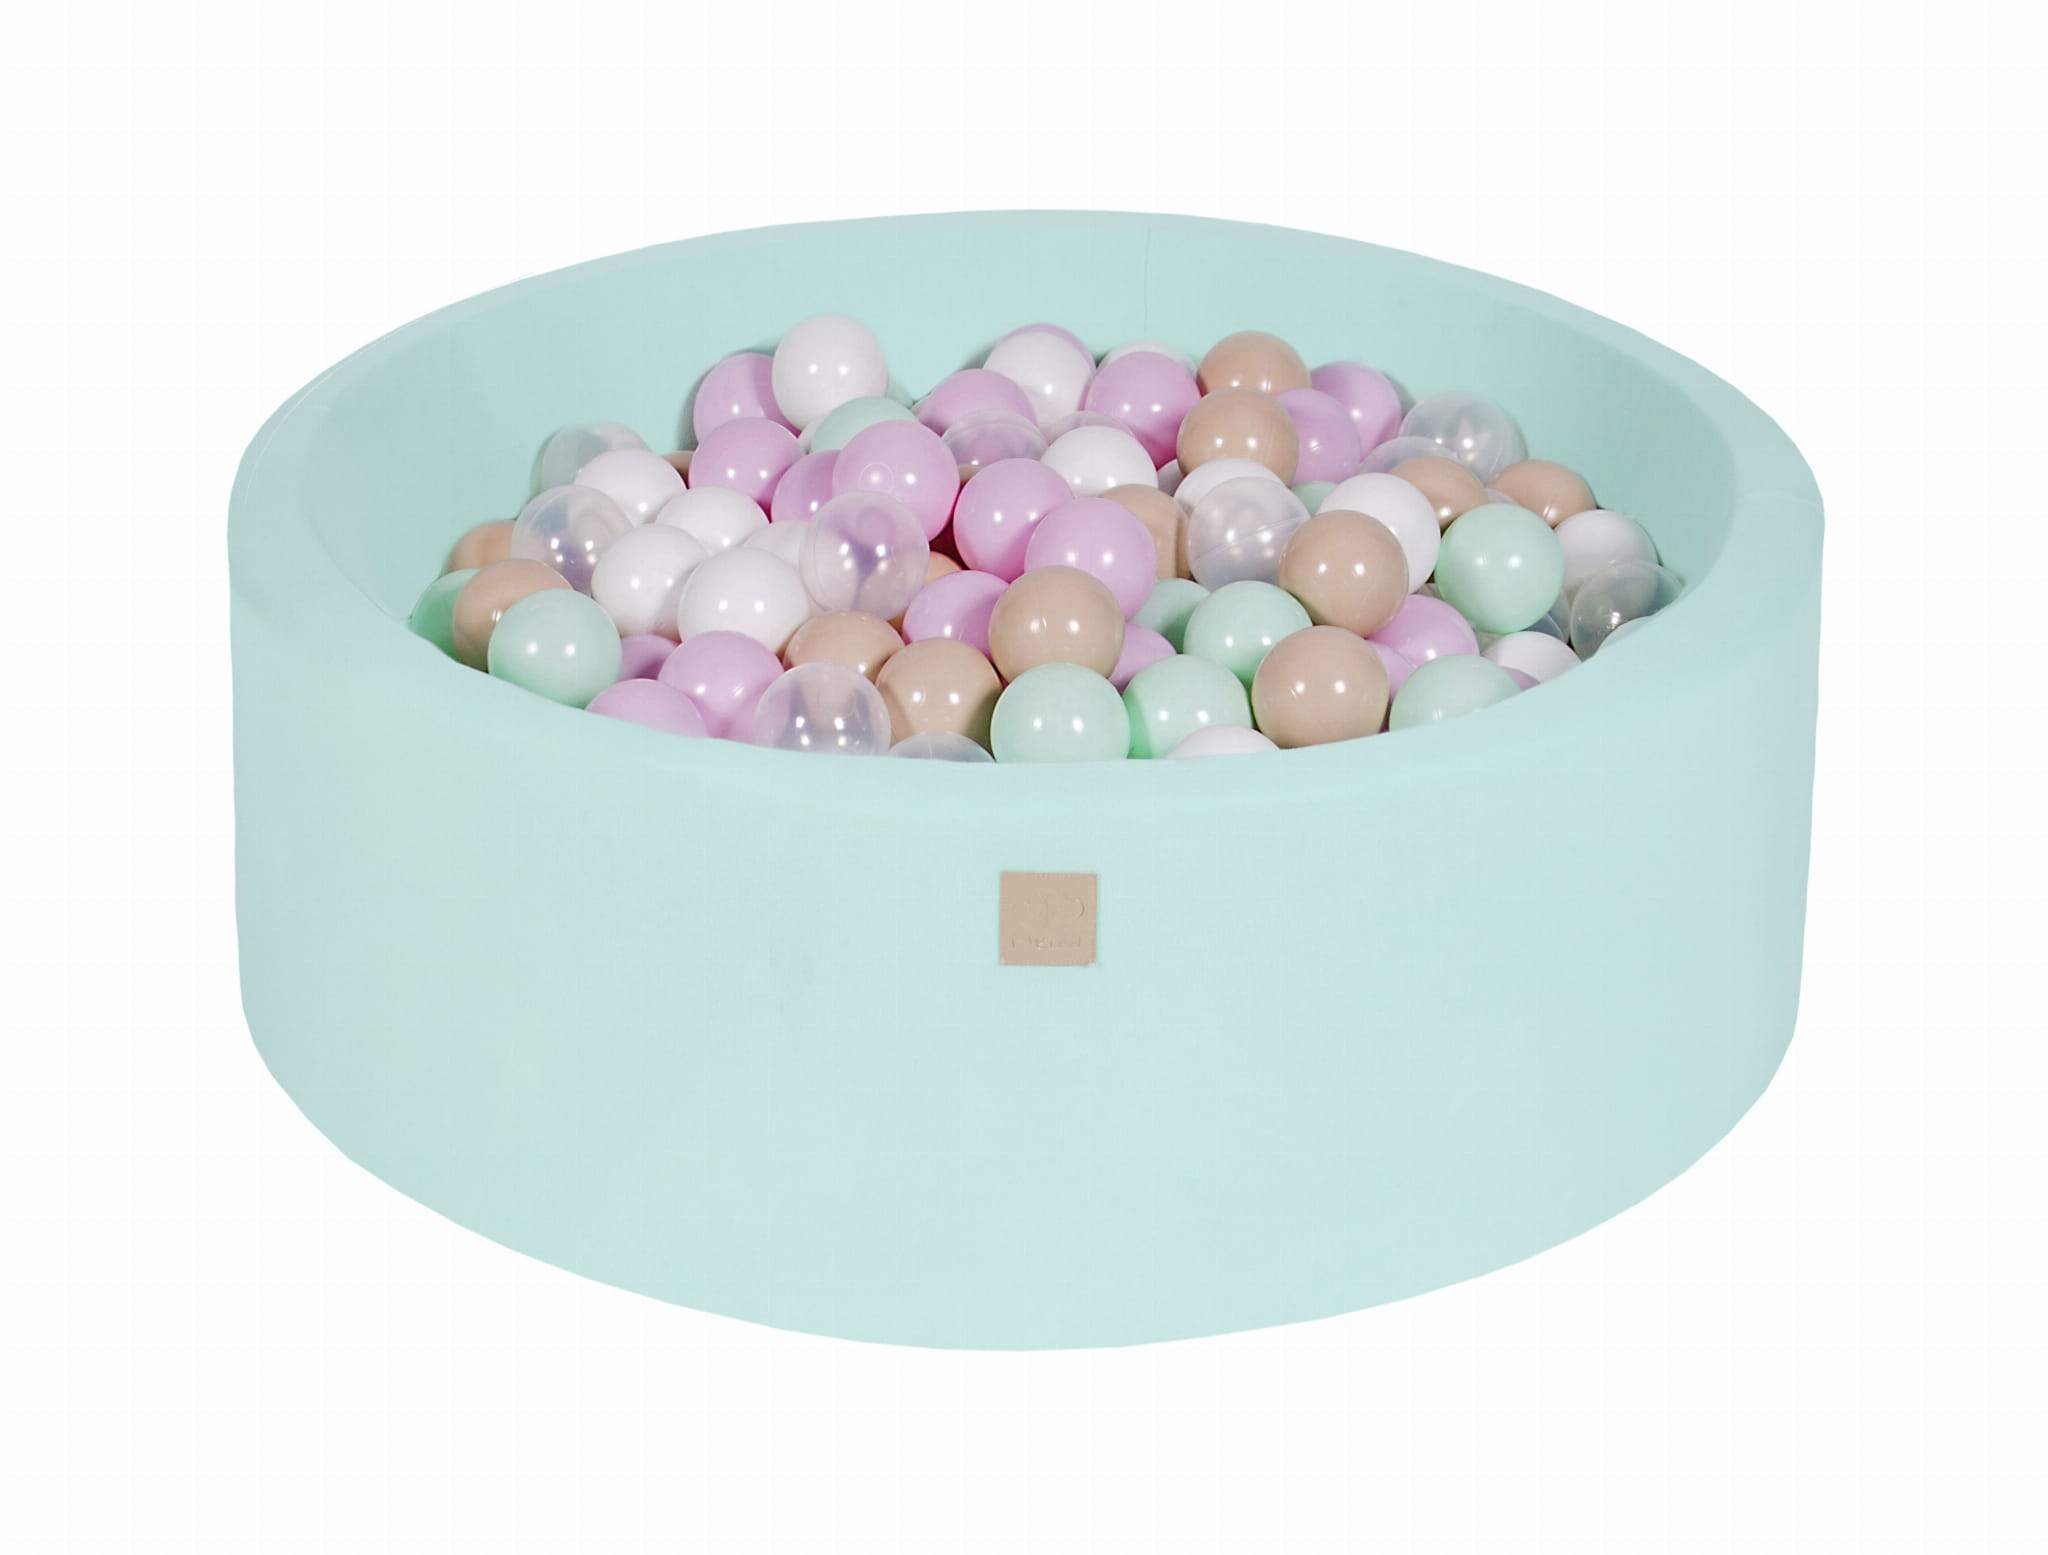 KiddoWorld Mintgrüner Bällebad mit 250 Bällen - Cupcake-Set